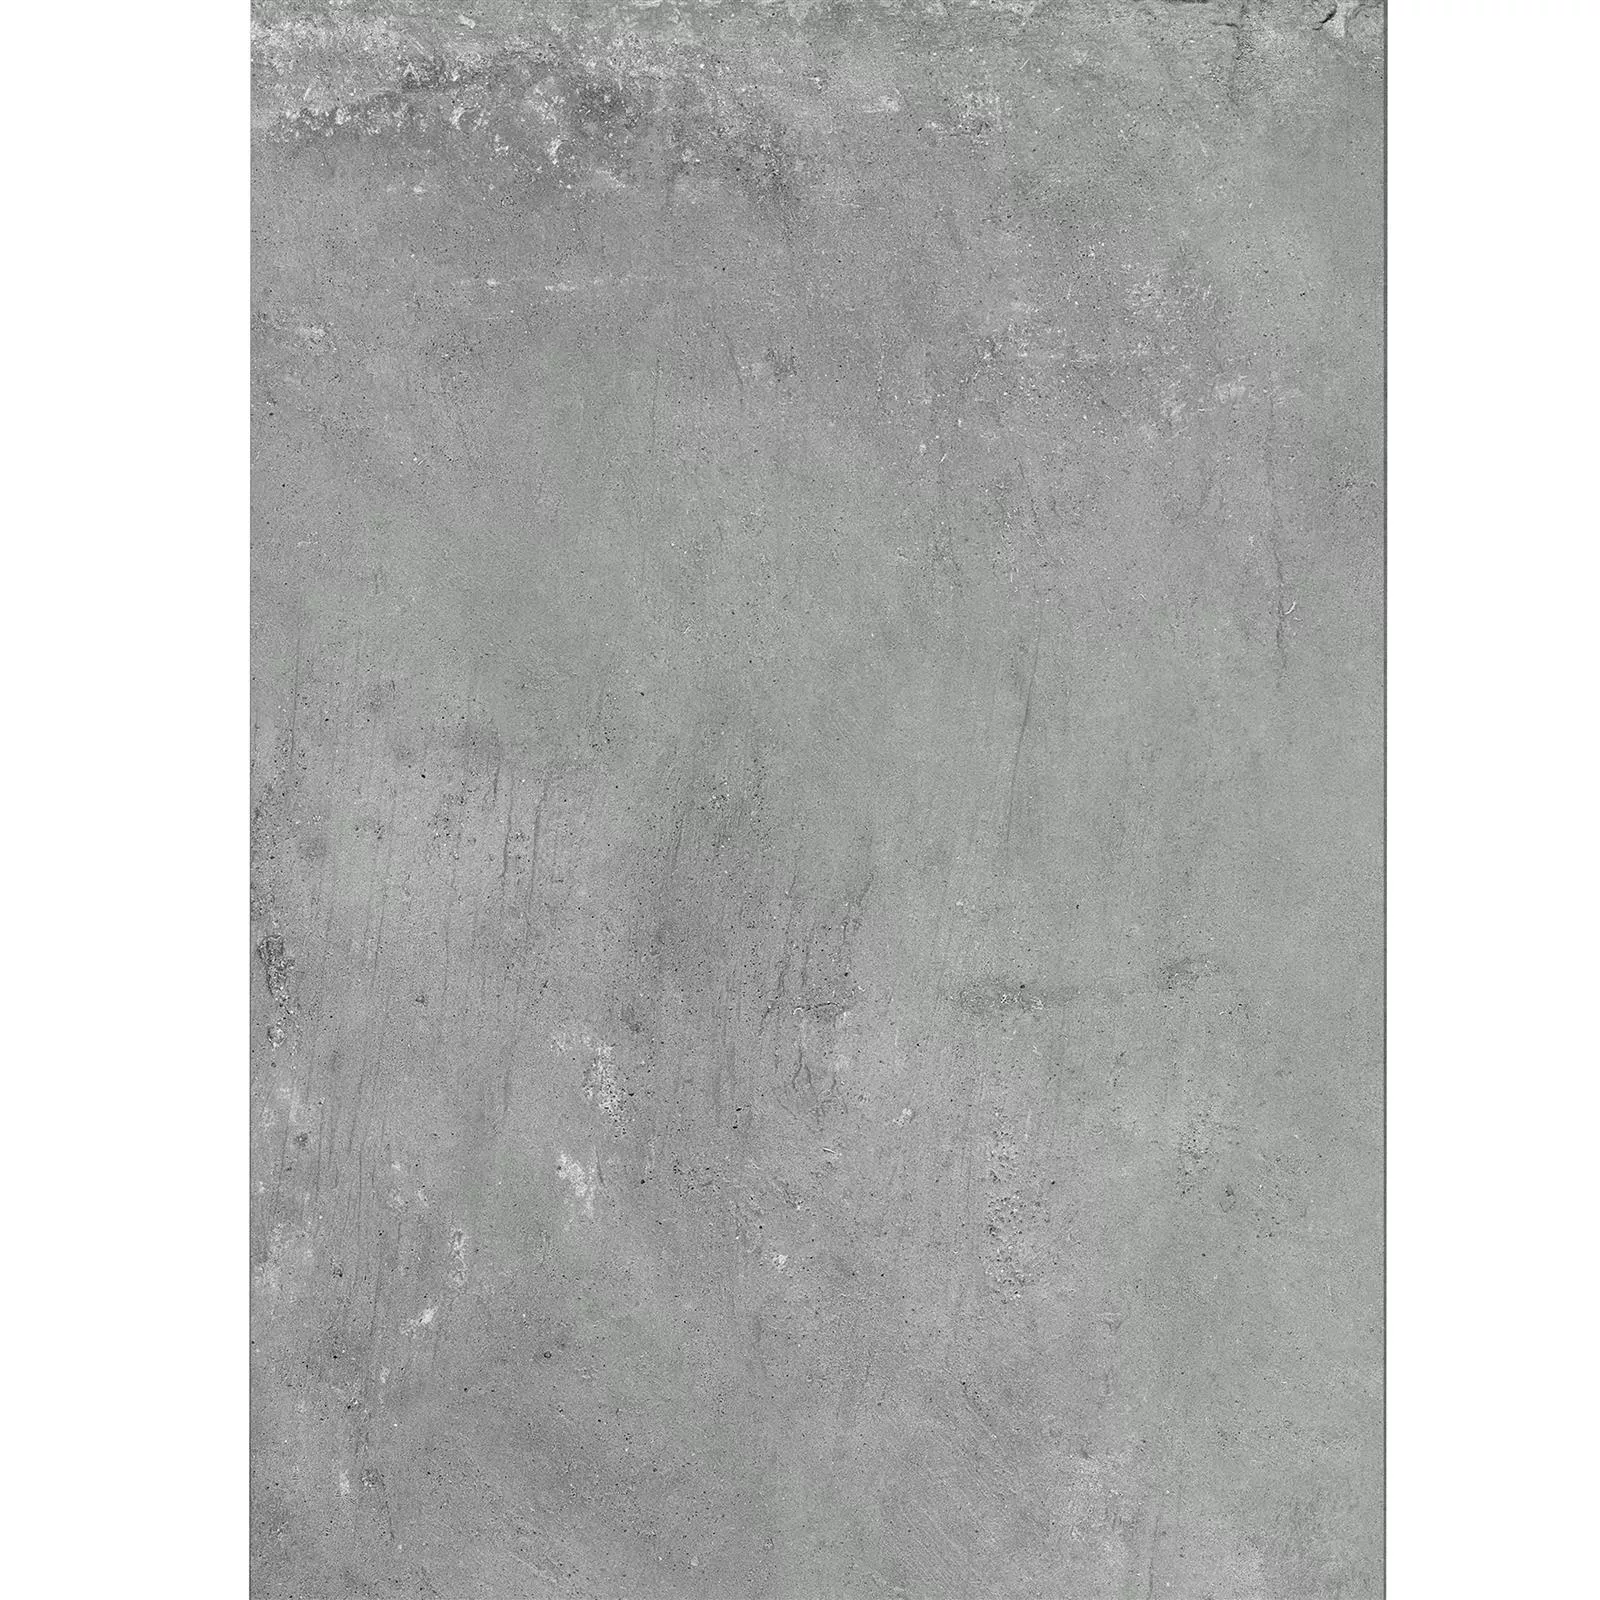 Sample Terrastegels Cement Optic Berlin Grijs 60x120cm